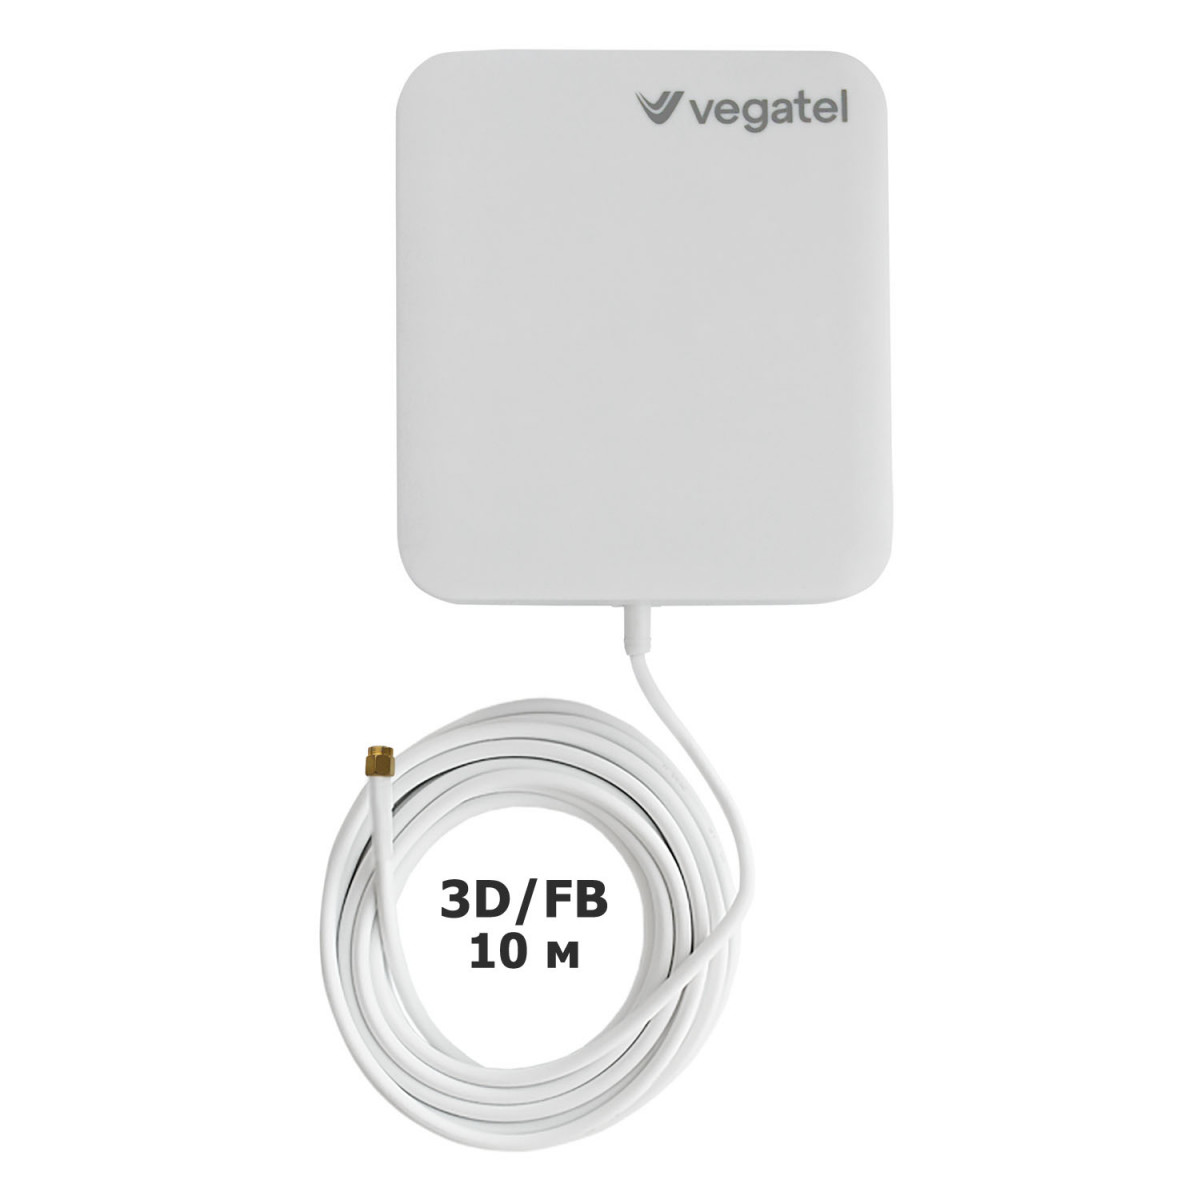 Детальное изображение товара "Комплект усиления сотовой связи Vegatel PL-900/2100" из каталога оборудования Антенна76